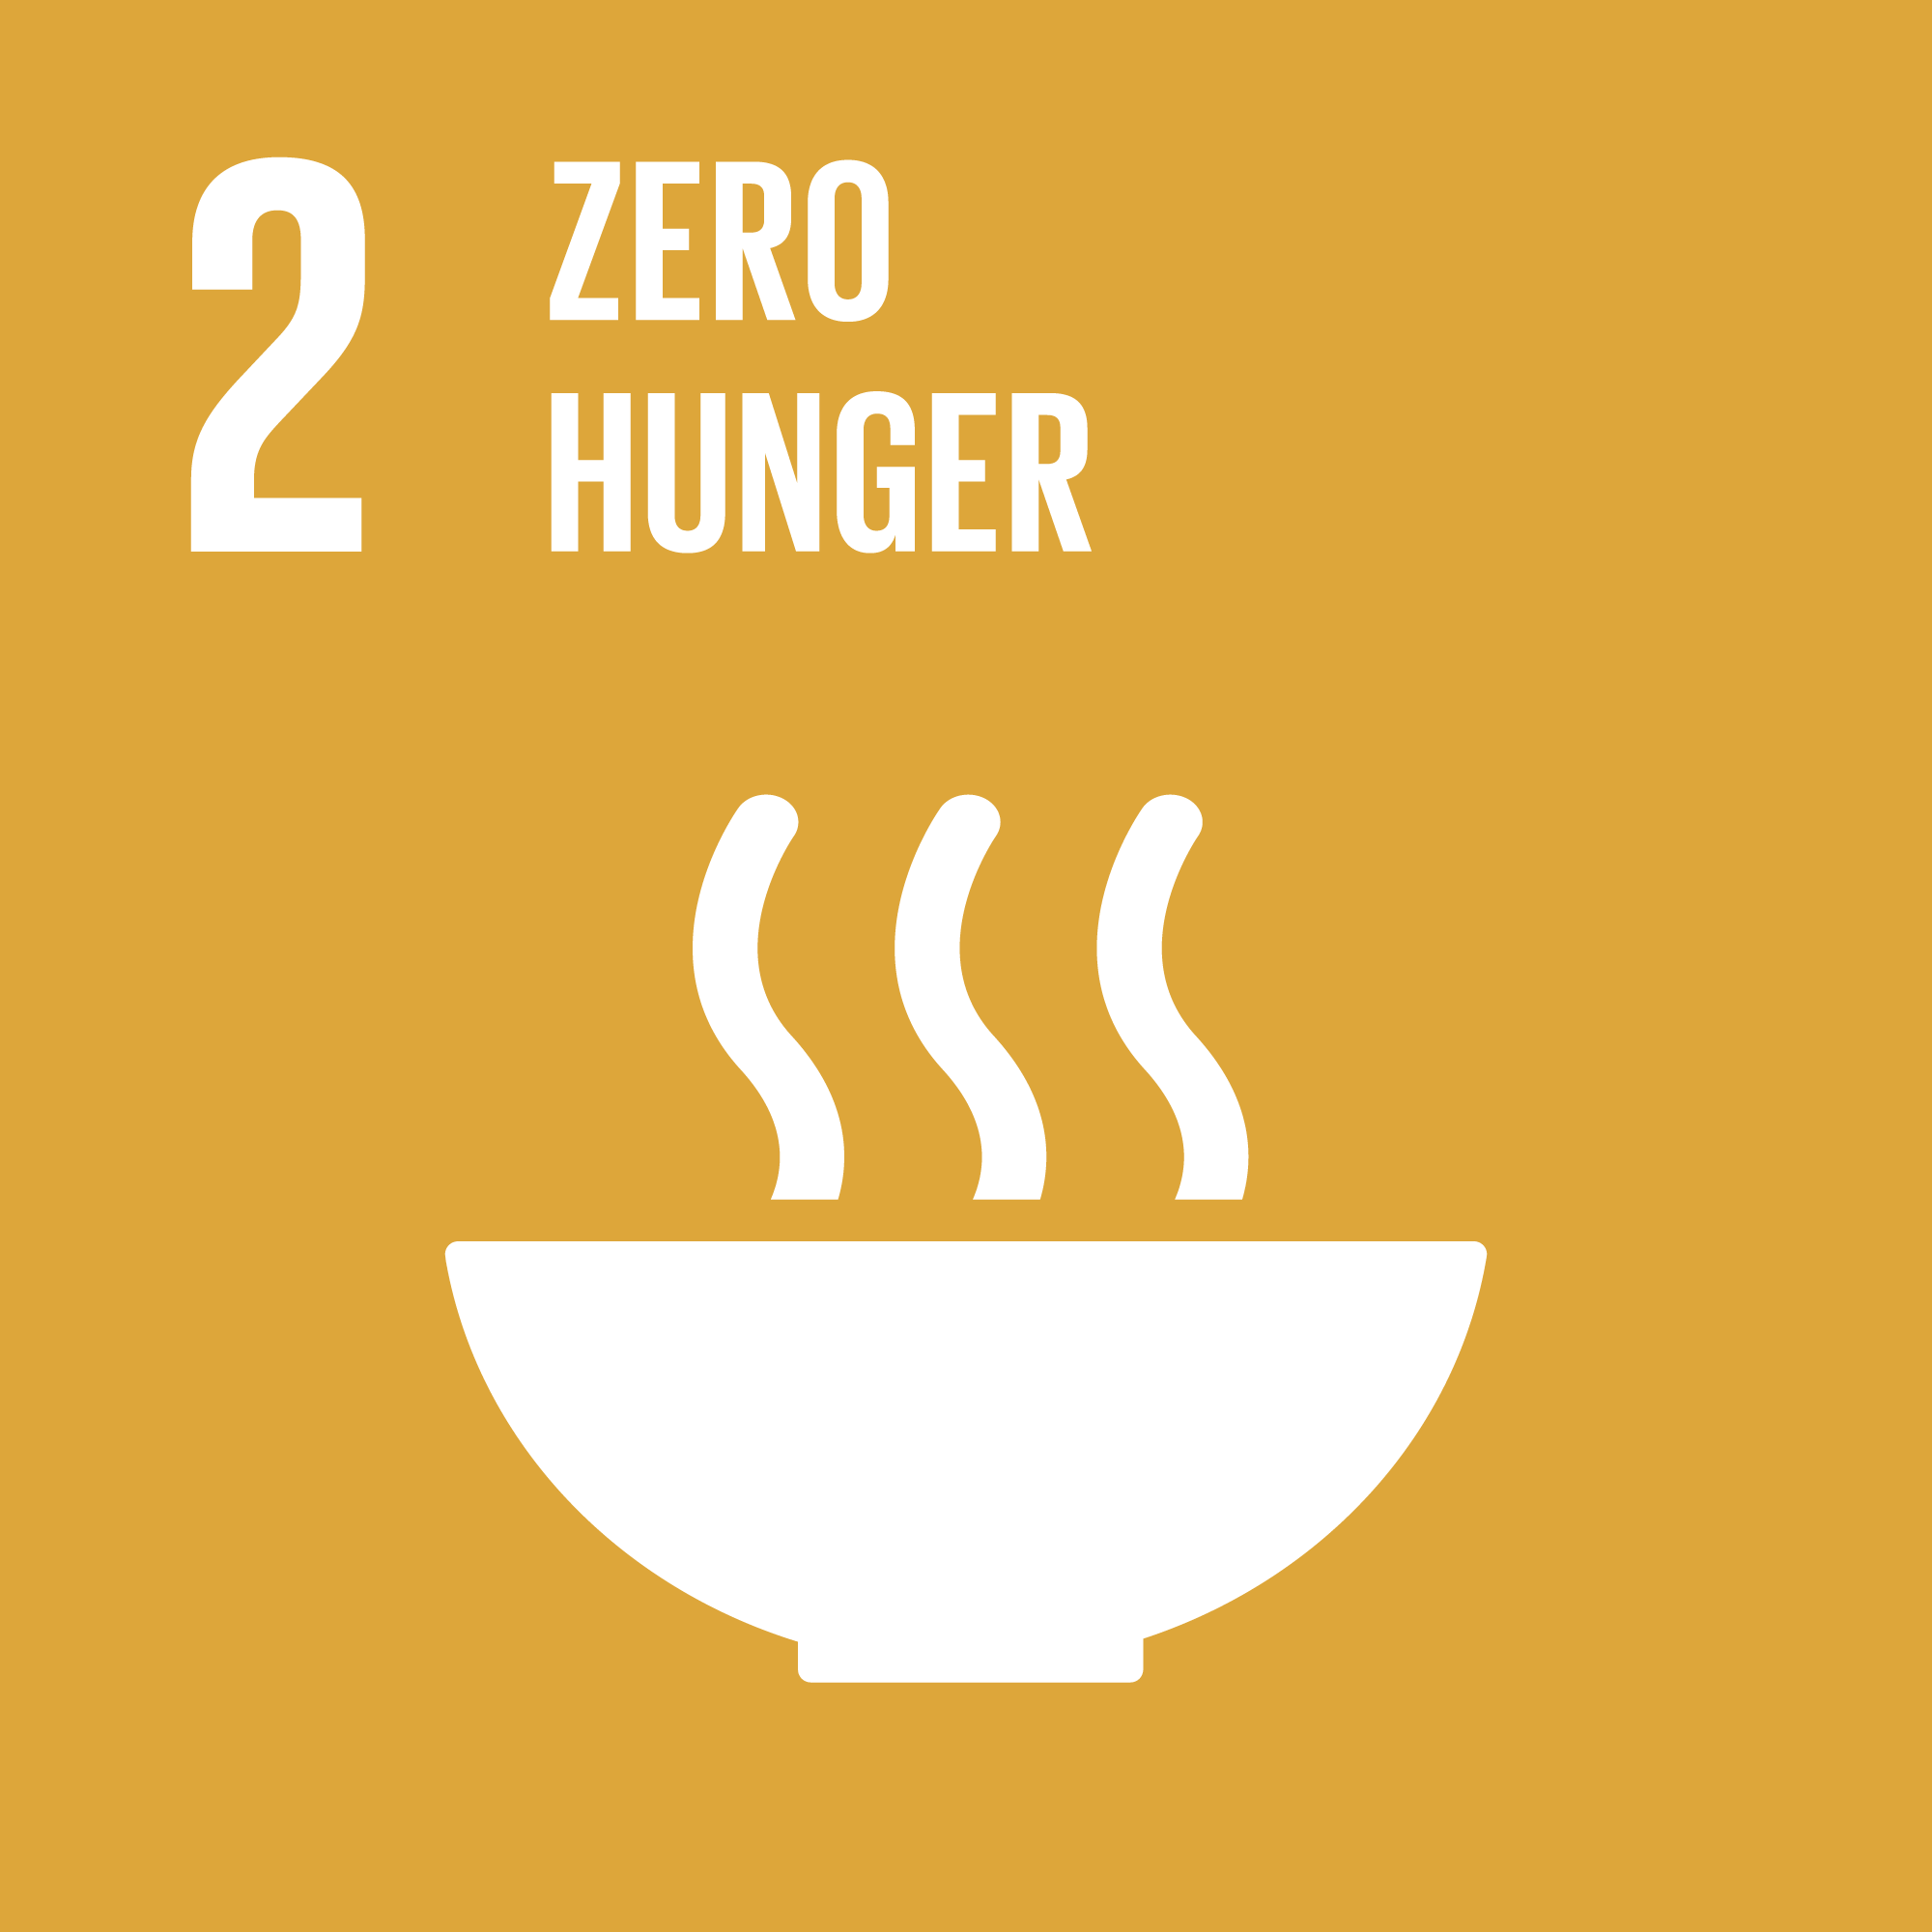 UN SDG 2 Zero Hunger